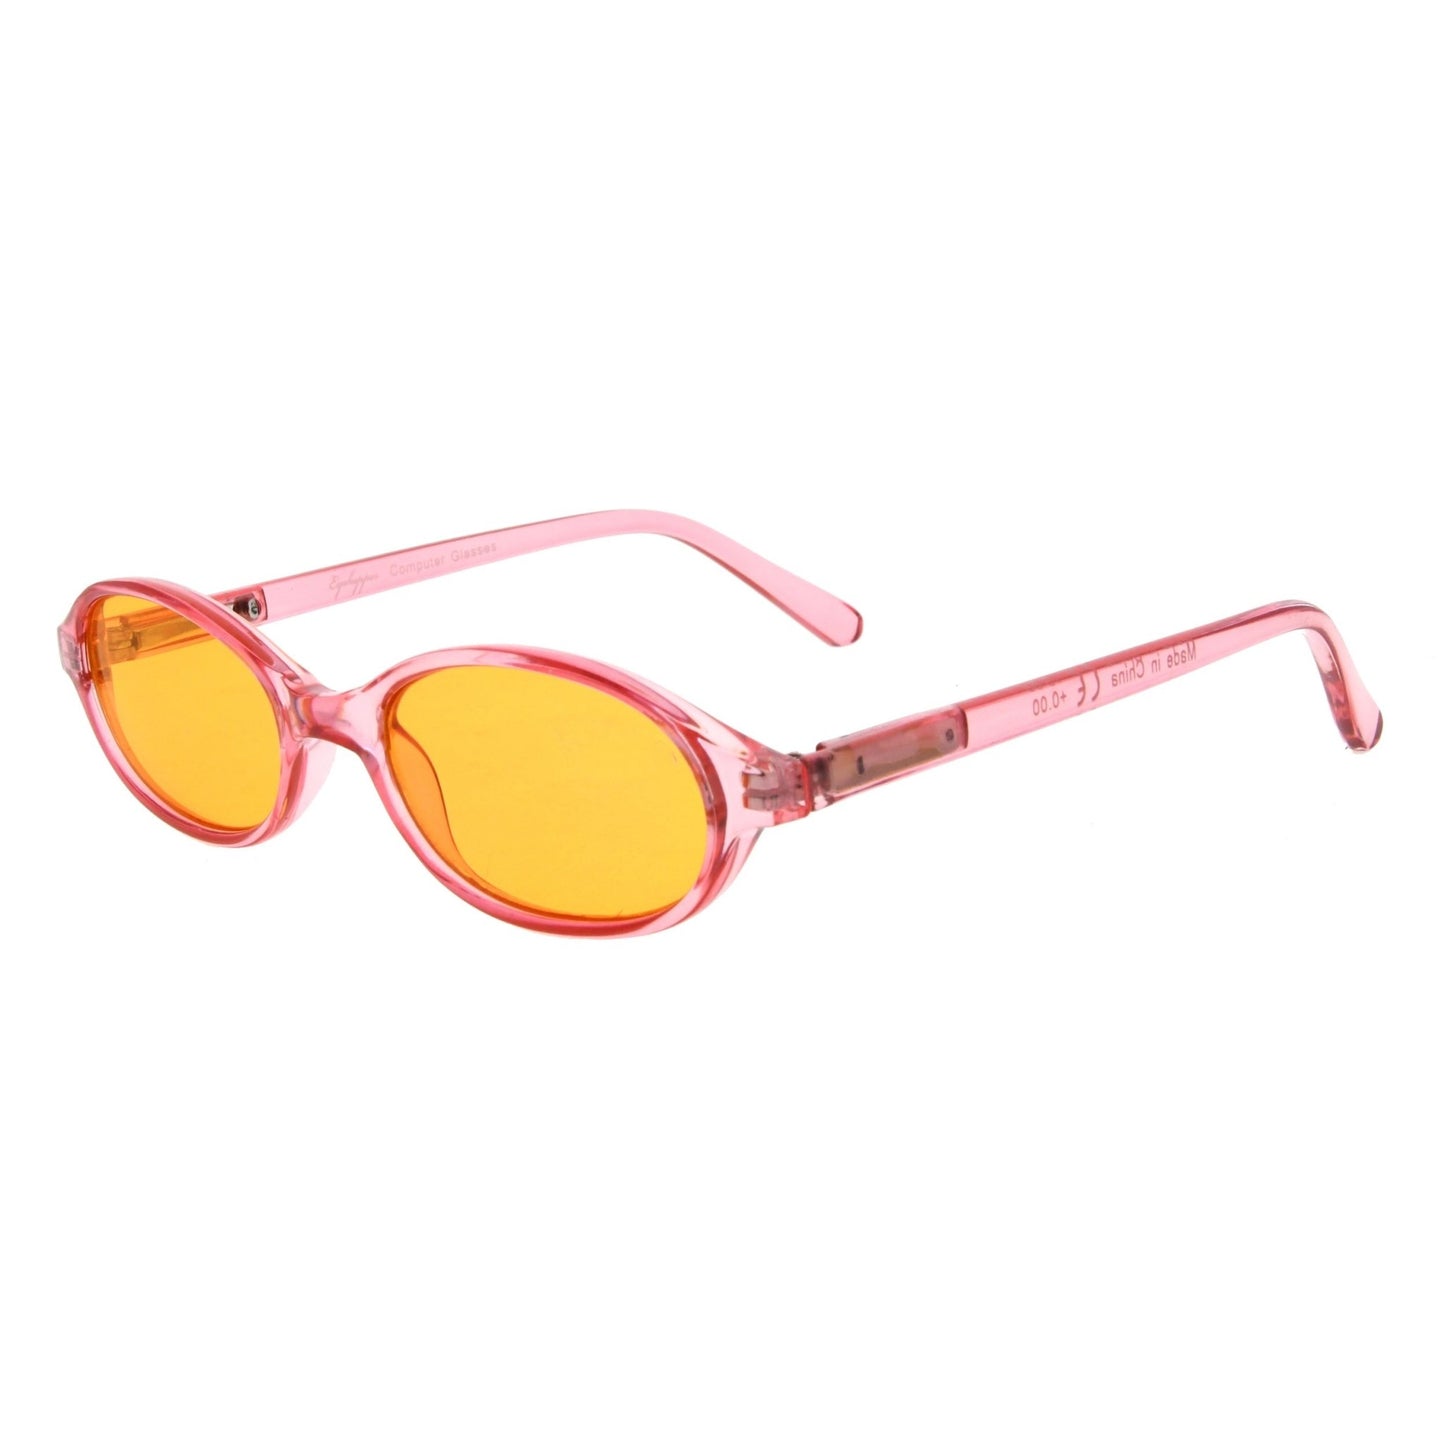 Stylish Oval Computer Eyeglasses for Kids Pink DSK01